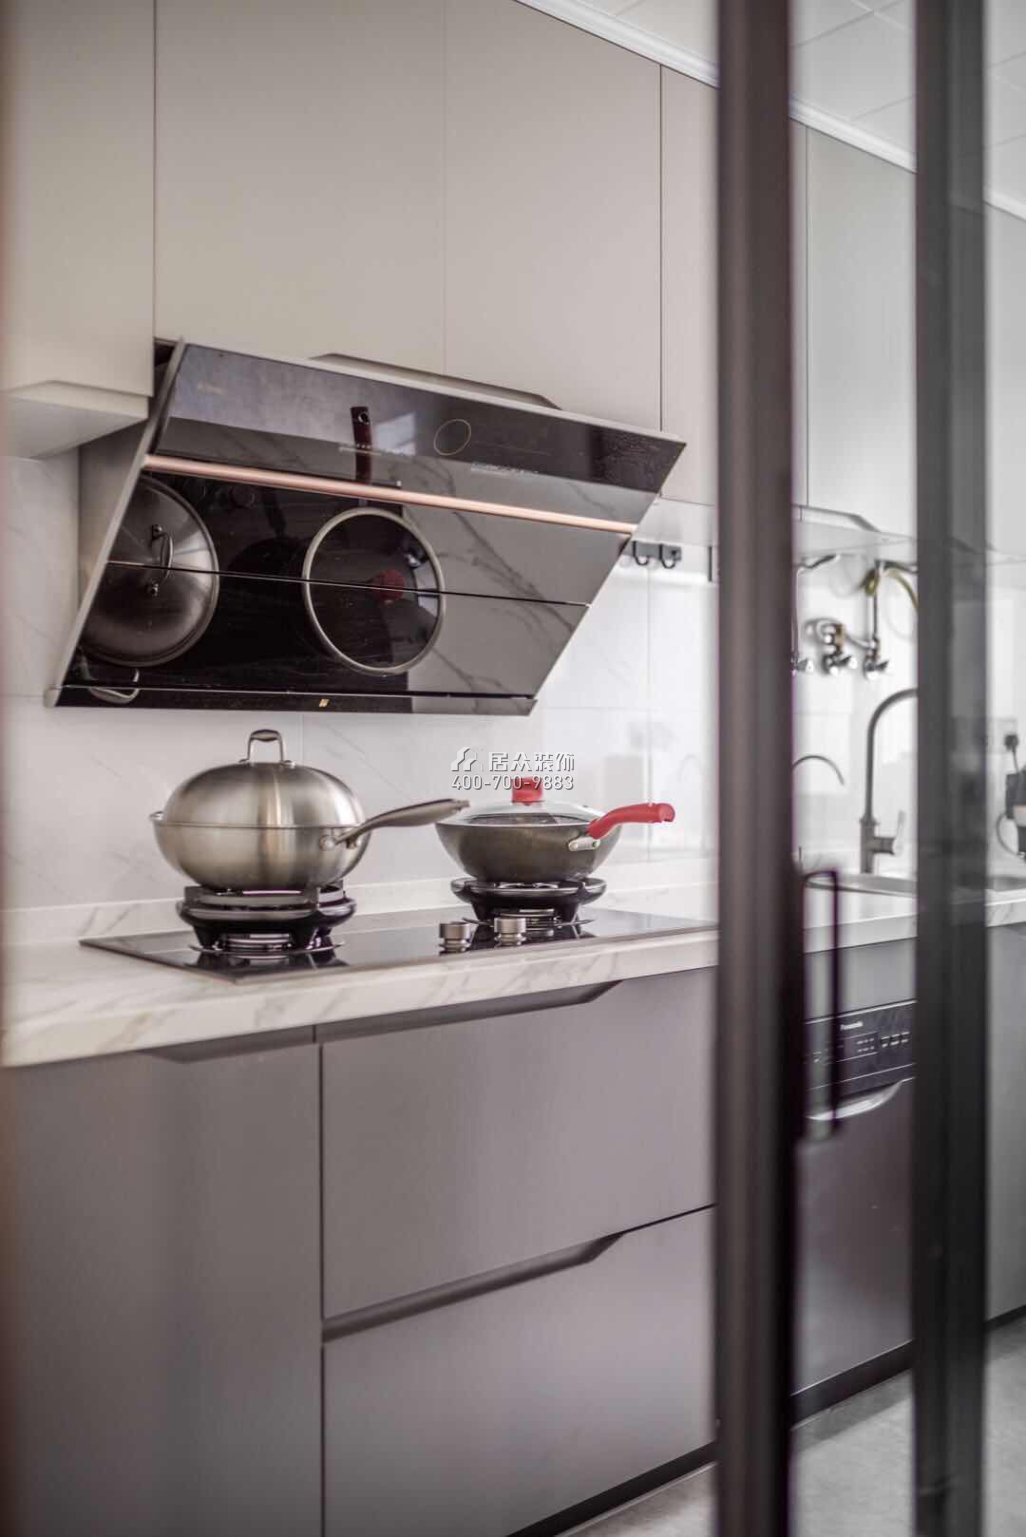 科苑学里110平方米现代简约风格平层户型厨房装修效果图